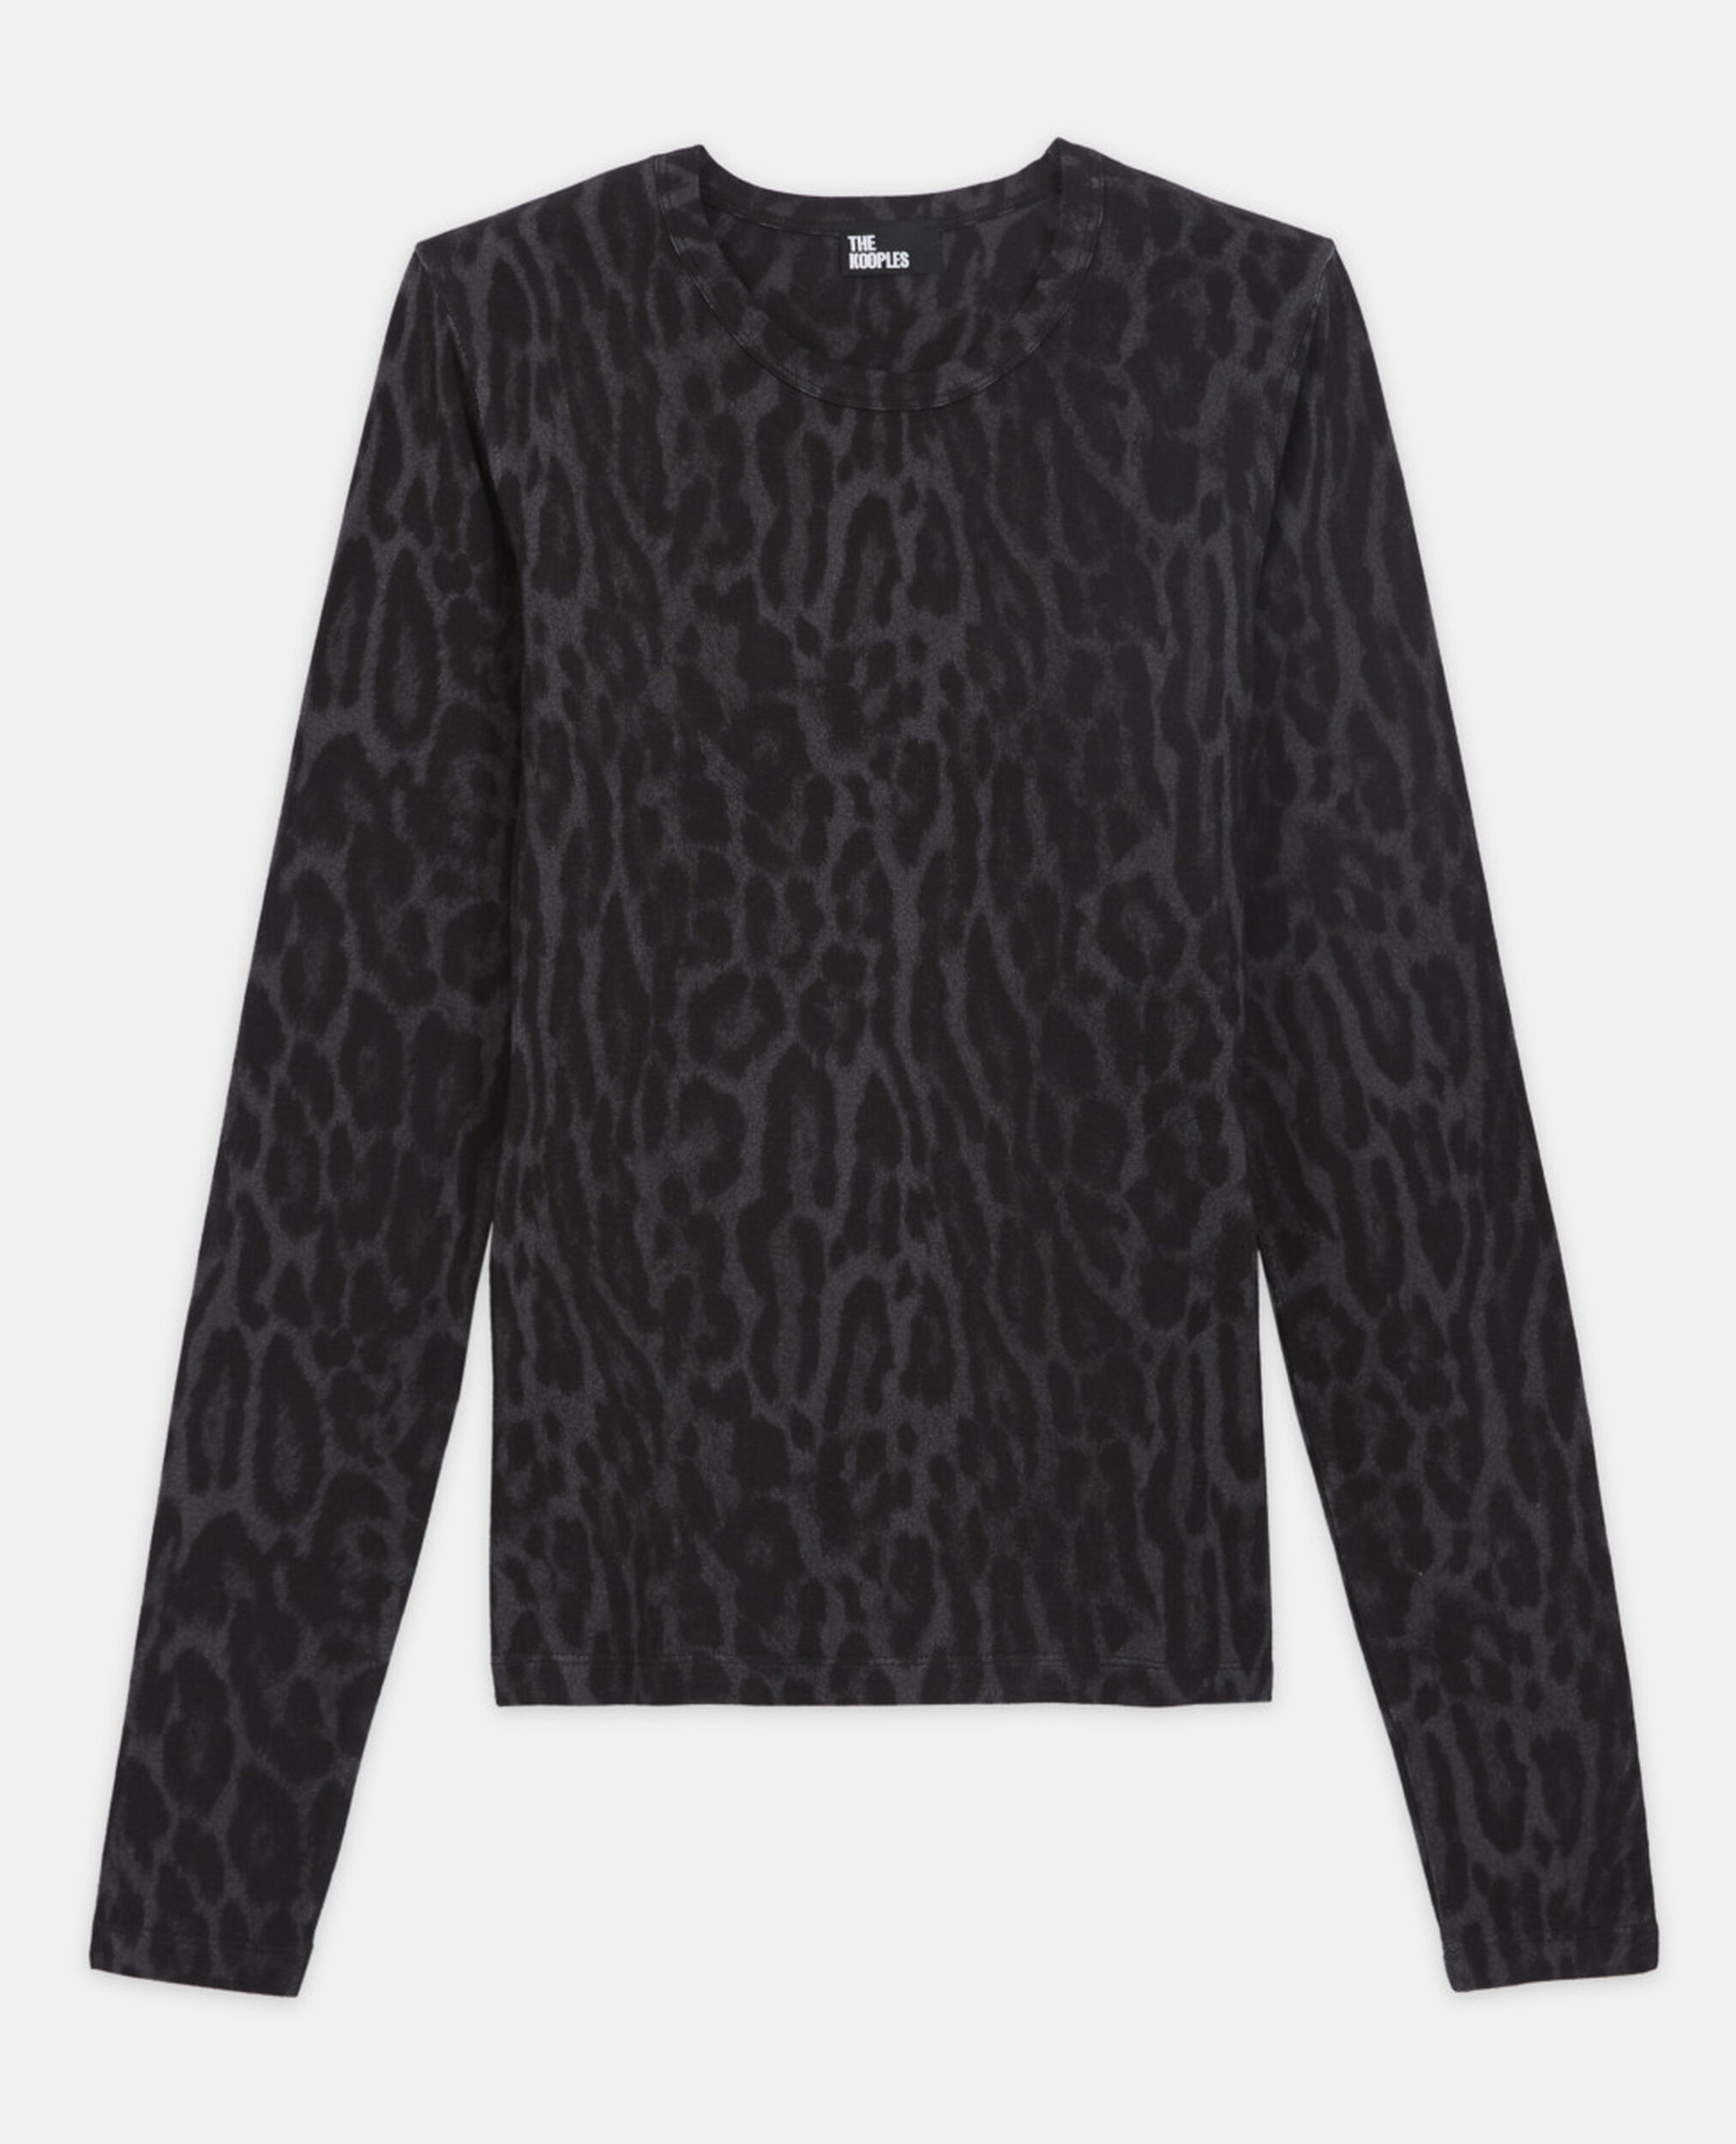 Camiseta algodón leopardo gris, BLACK, hi-res image number null